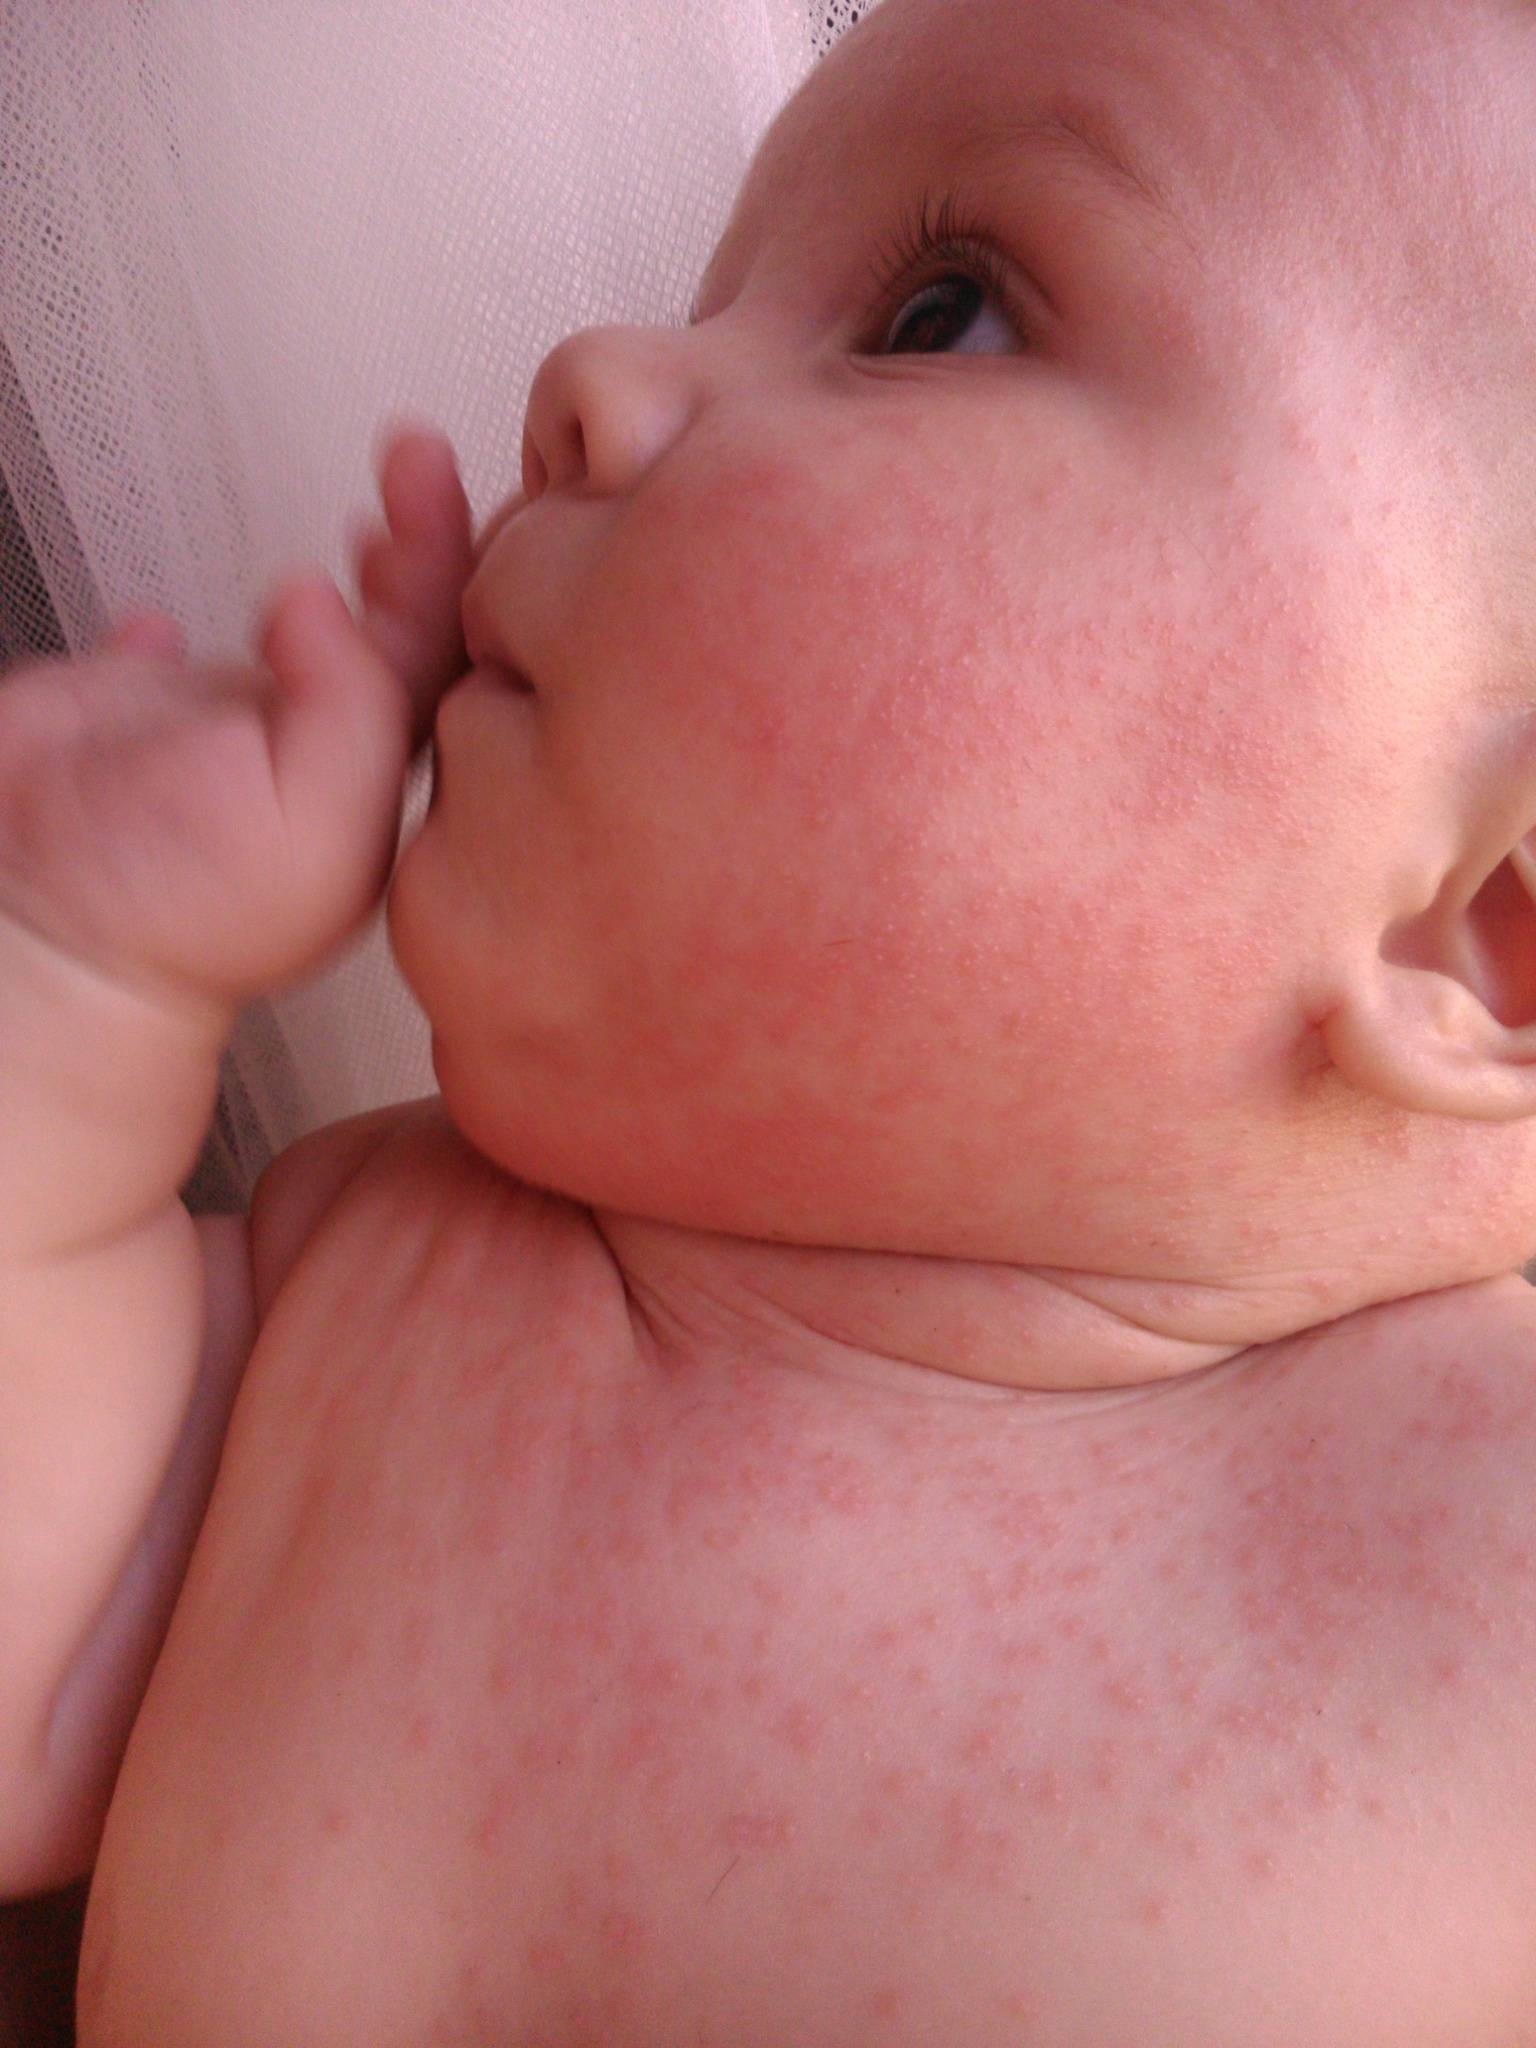 Врожденный пигментный невус у детей, удаление невуса ребенку кожи на голове, шеи или туловище, лечение сосудистого невуса у новорожденных